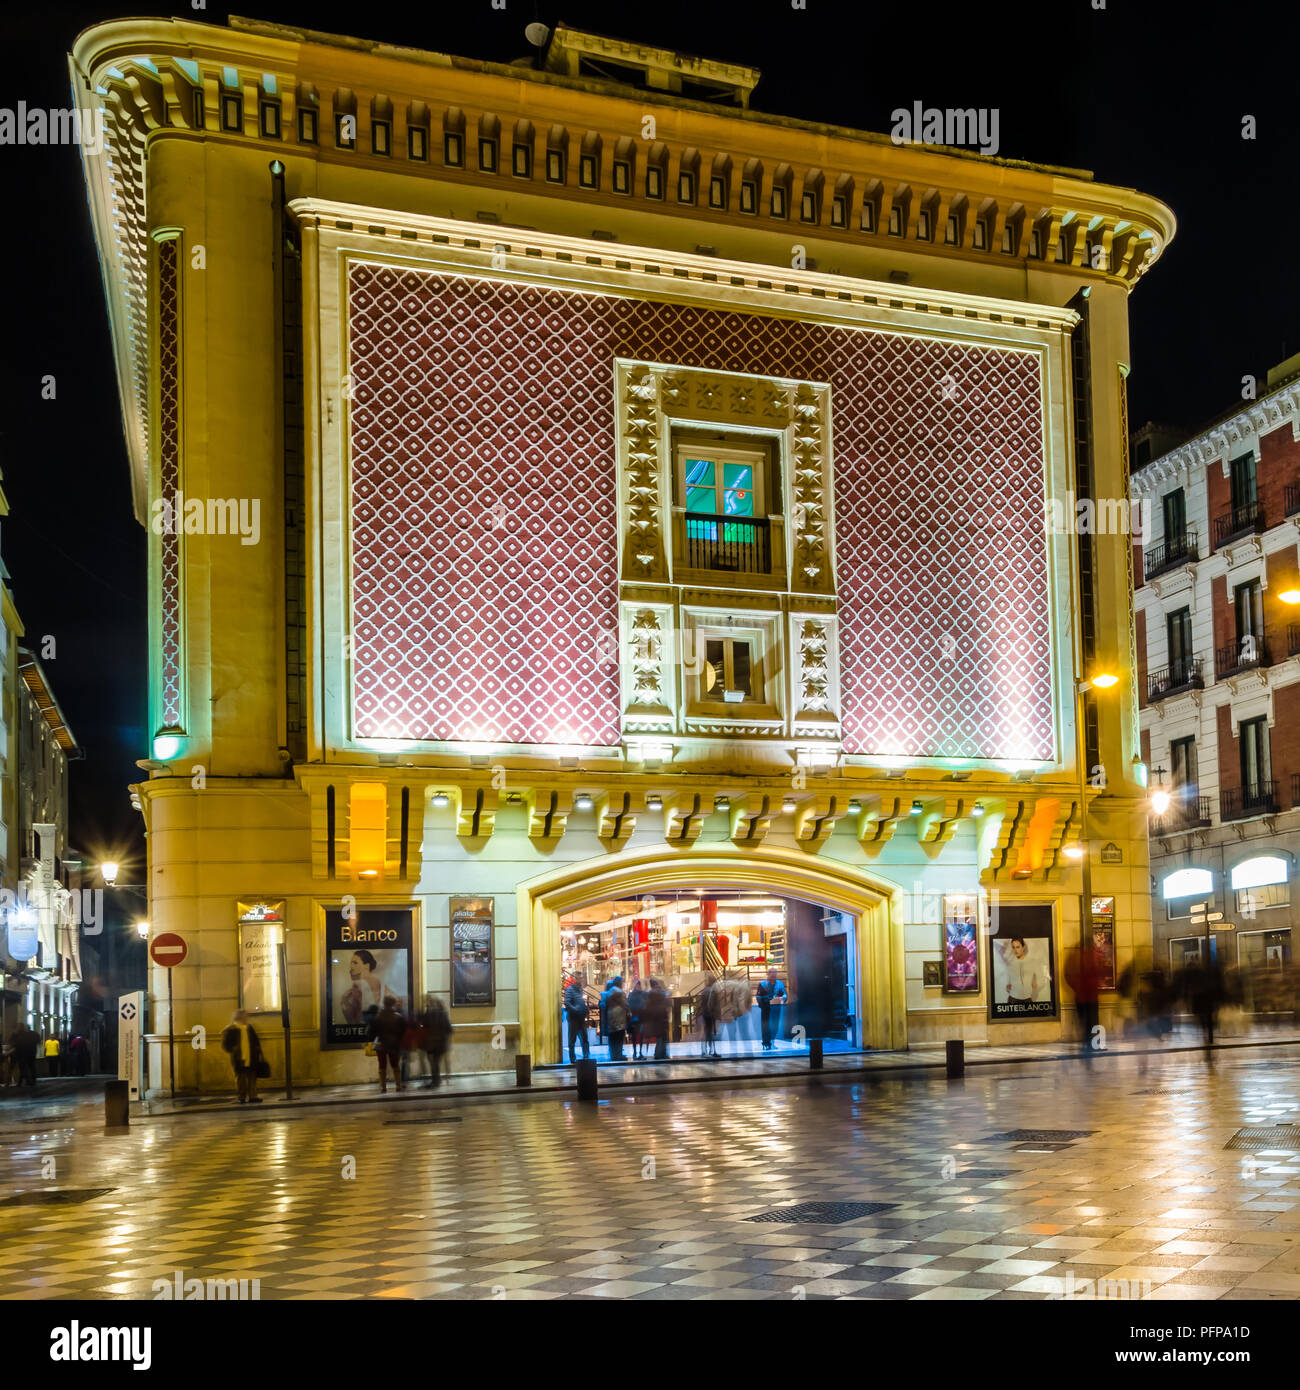 GRANADA, ESPAGNE - février 21, 2015 : Vue de nuit de la façade principale du cinéma Aliatar (Cine Aliatar), beau bâtiment de Granada, Espagne, conçu par Banque D'Images